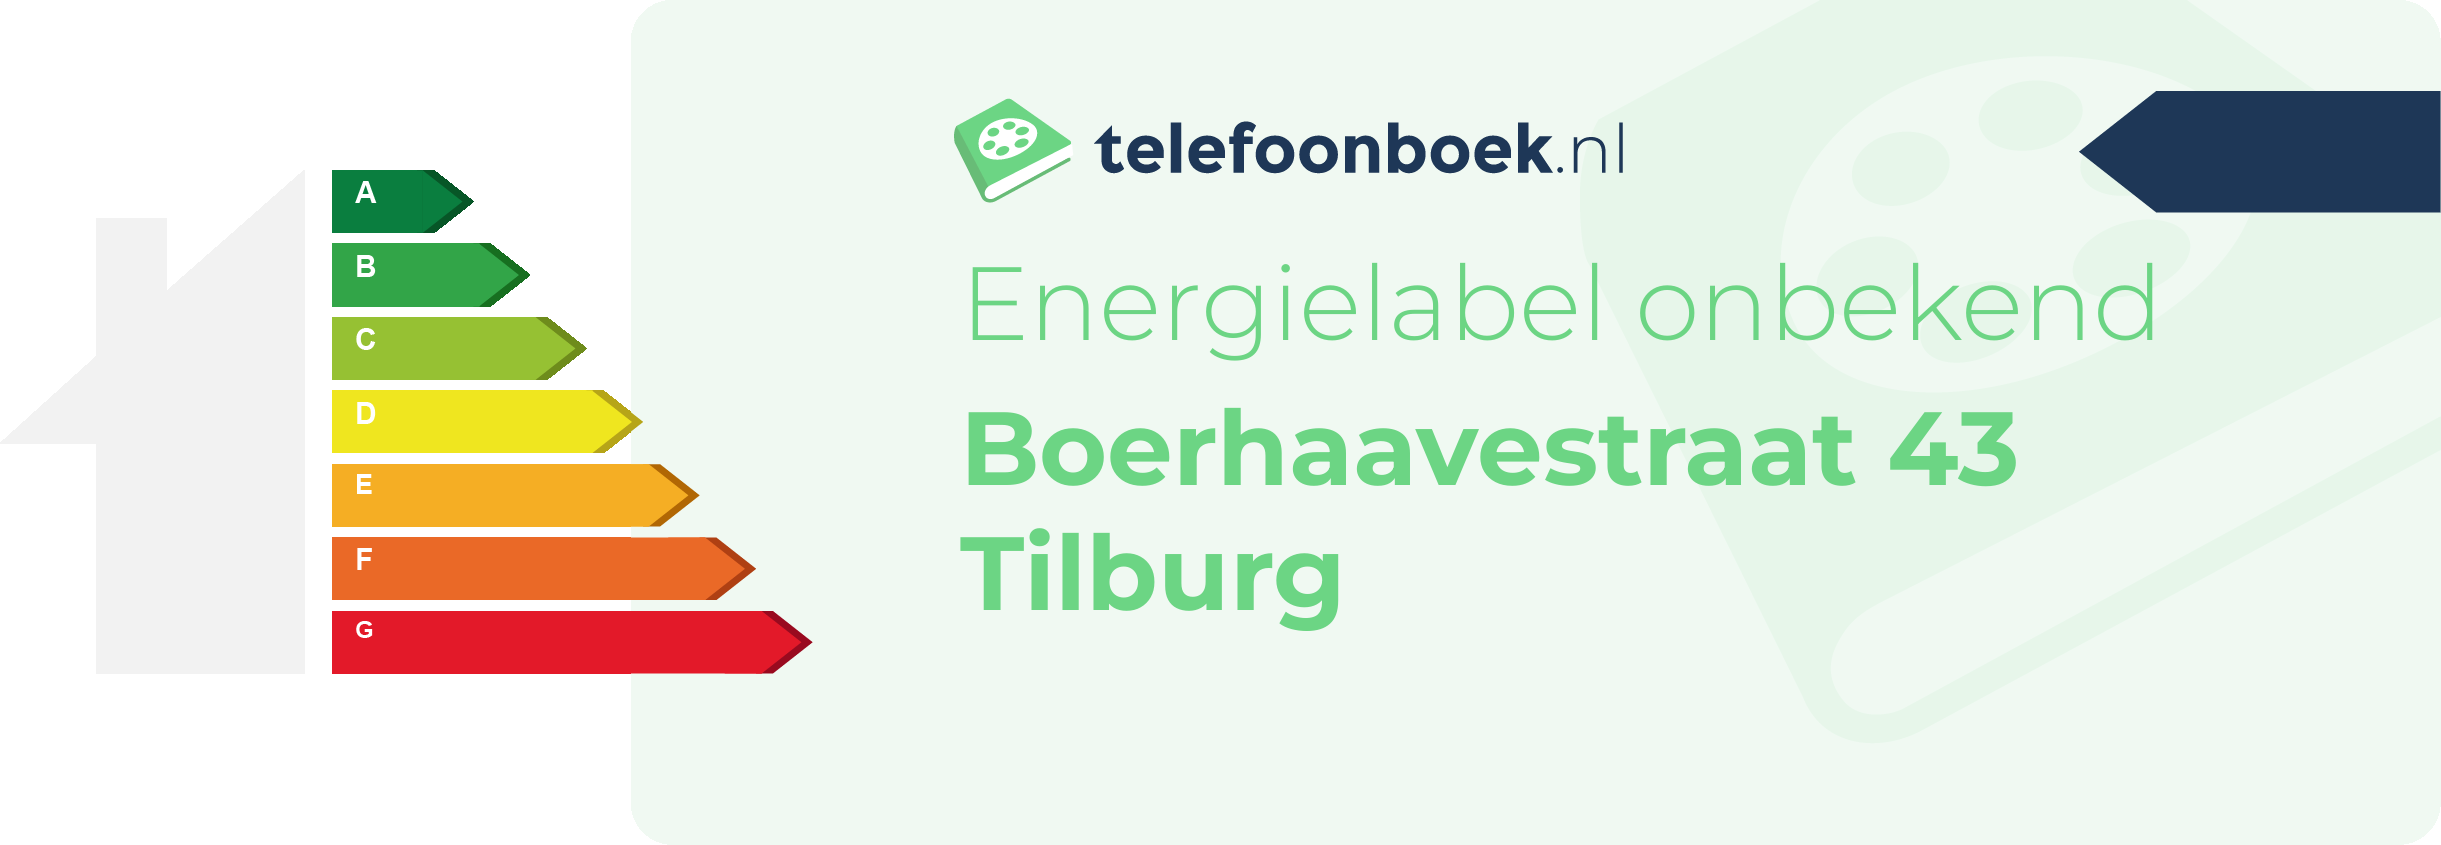 Energielabel Boerhaavestraat 43 Tilburg